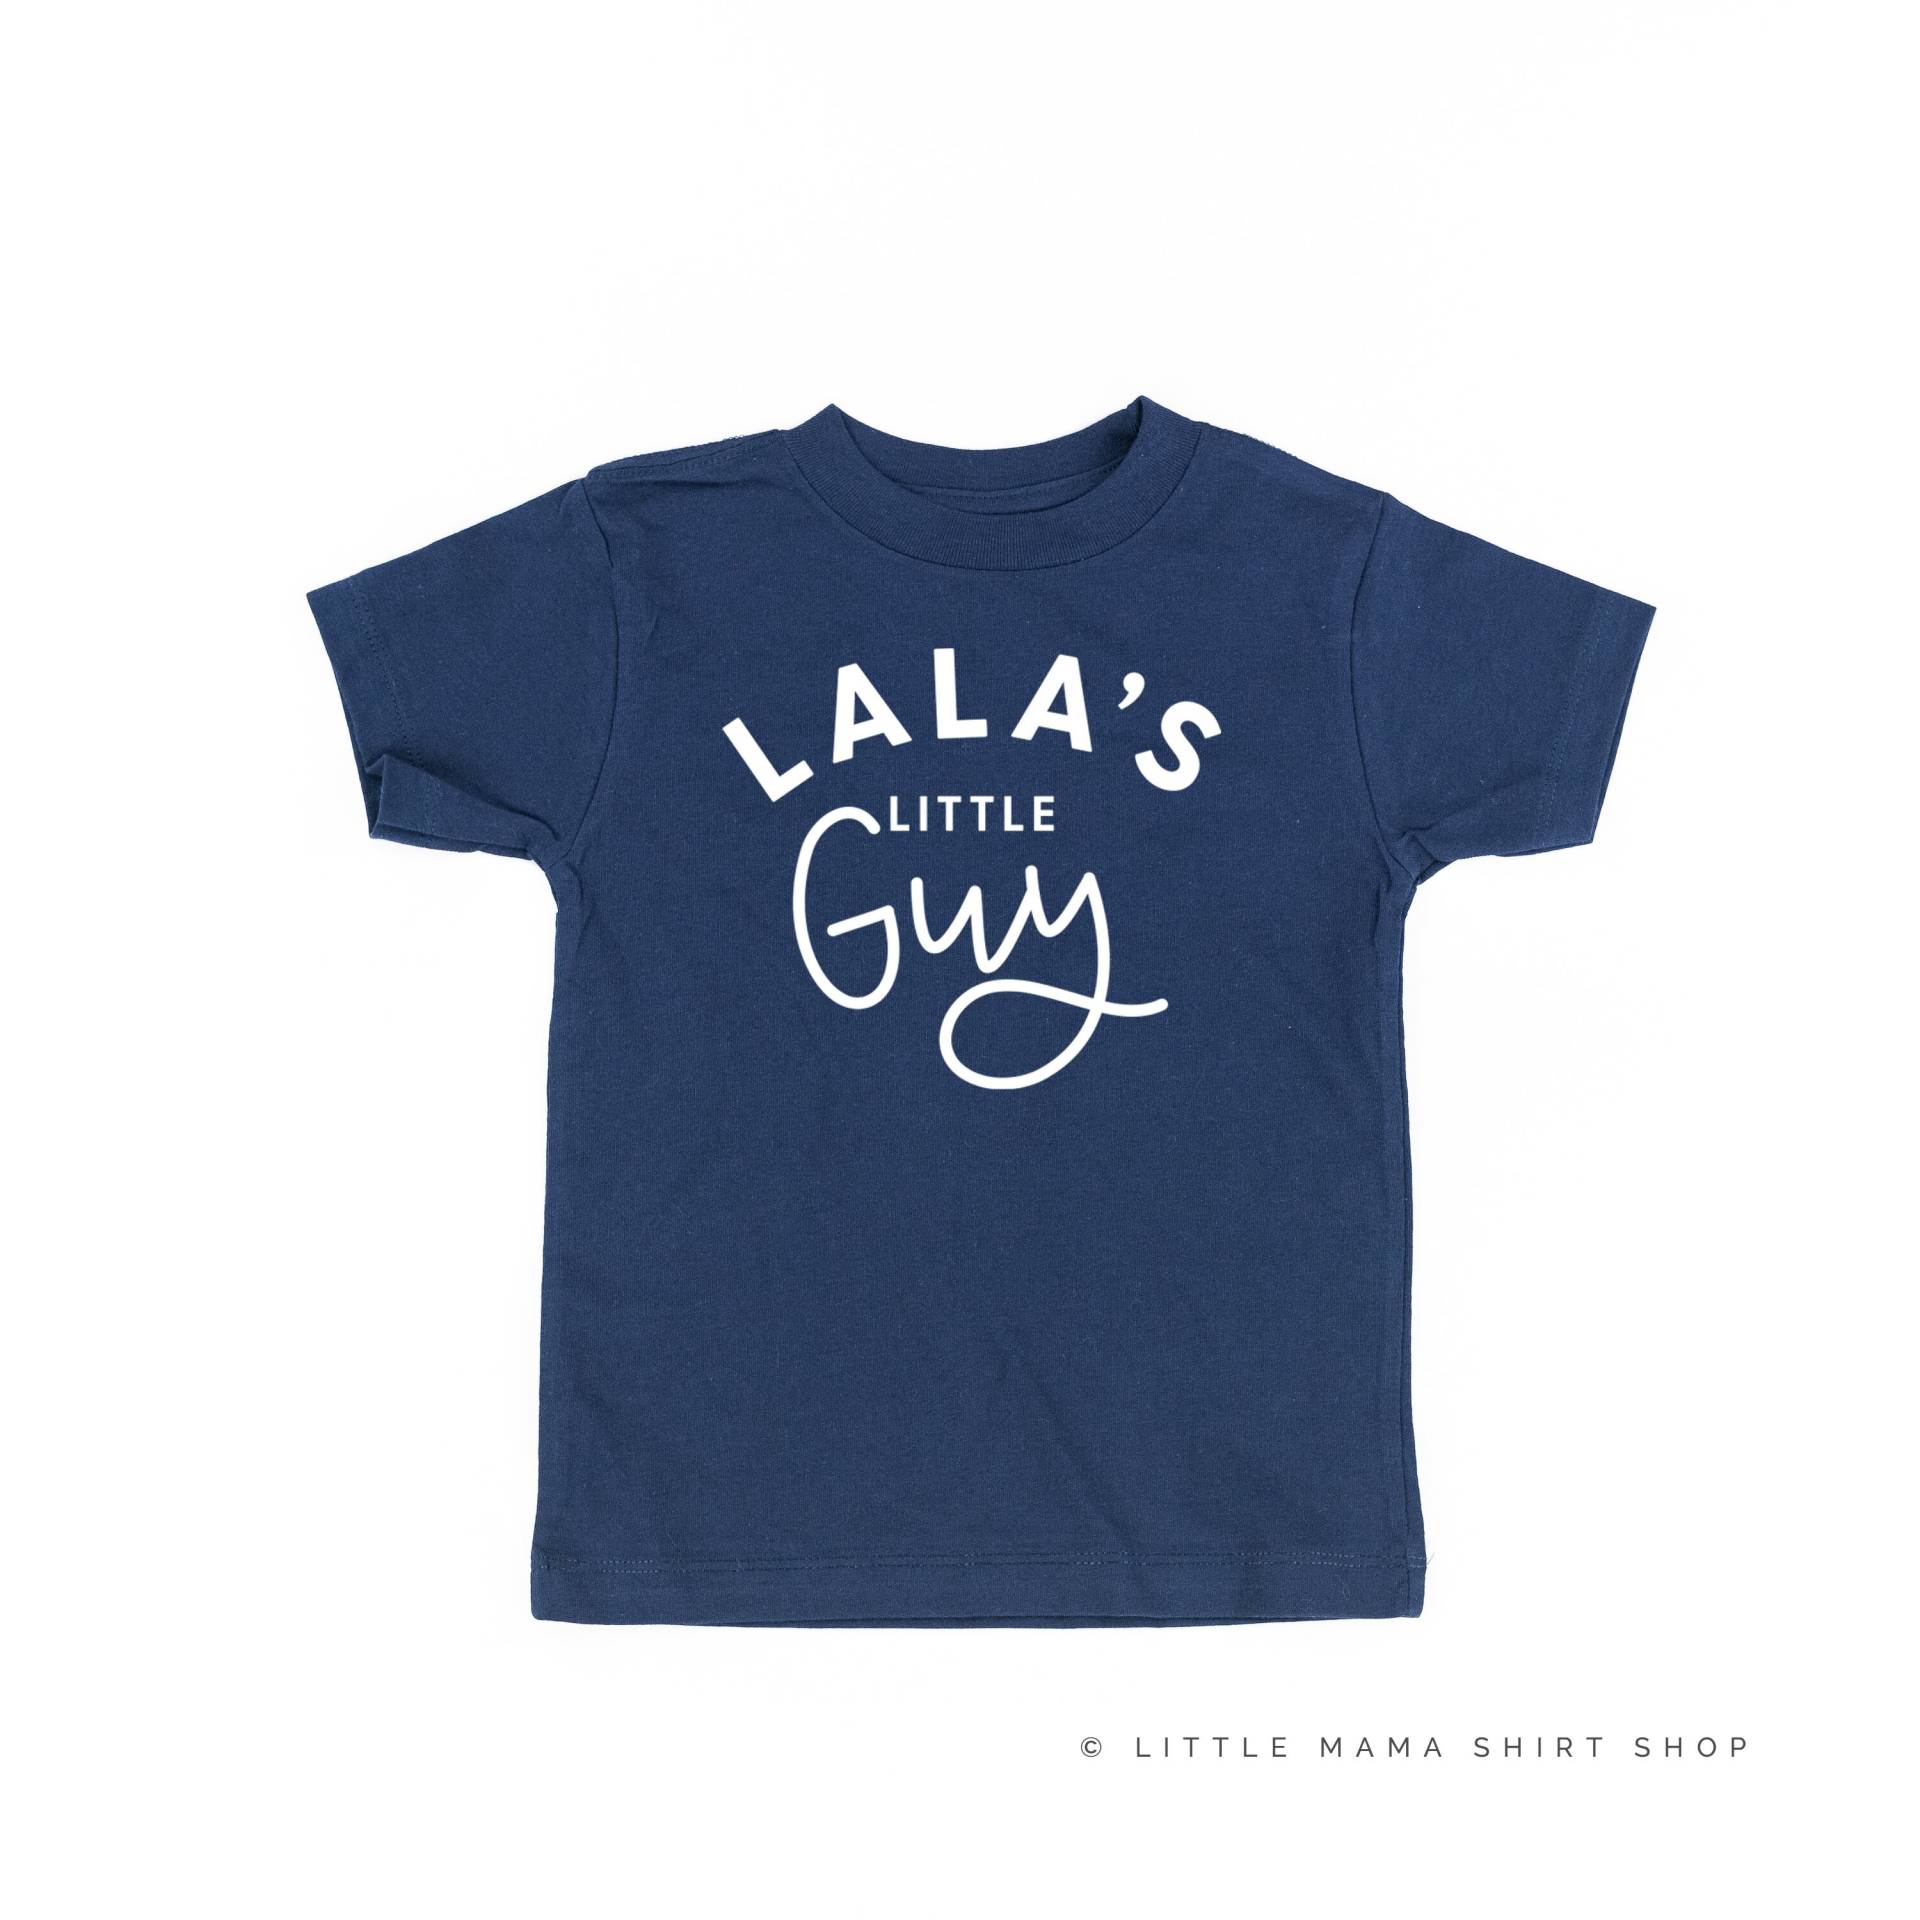 Lala Es Little Guy - Kindershirt | Kleinkind Junge Shirt Shirts Für Kleine Jungs Omas Kerl Baby von LittleMamaShirtShop